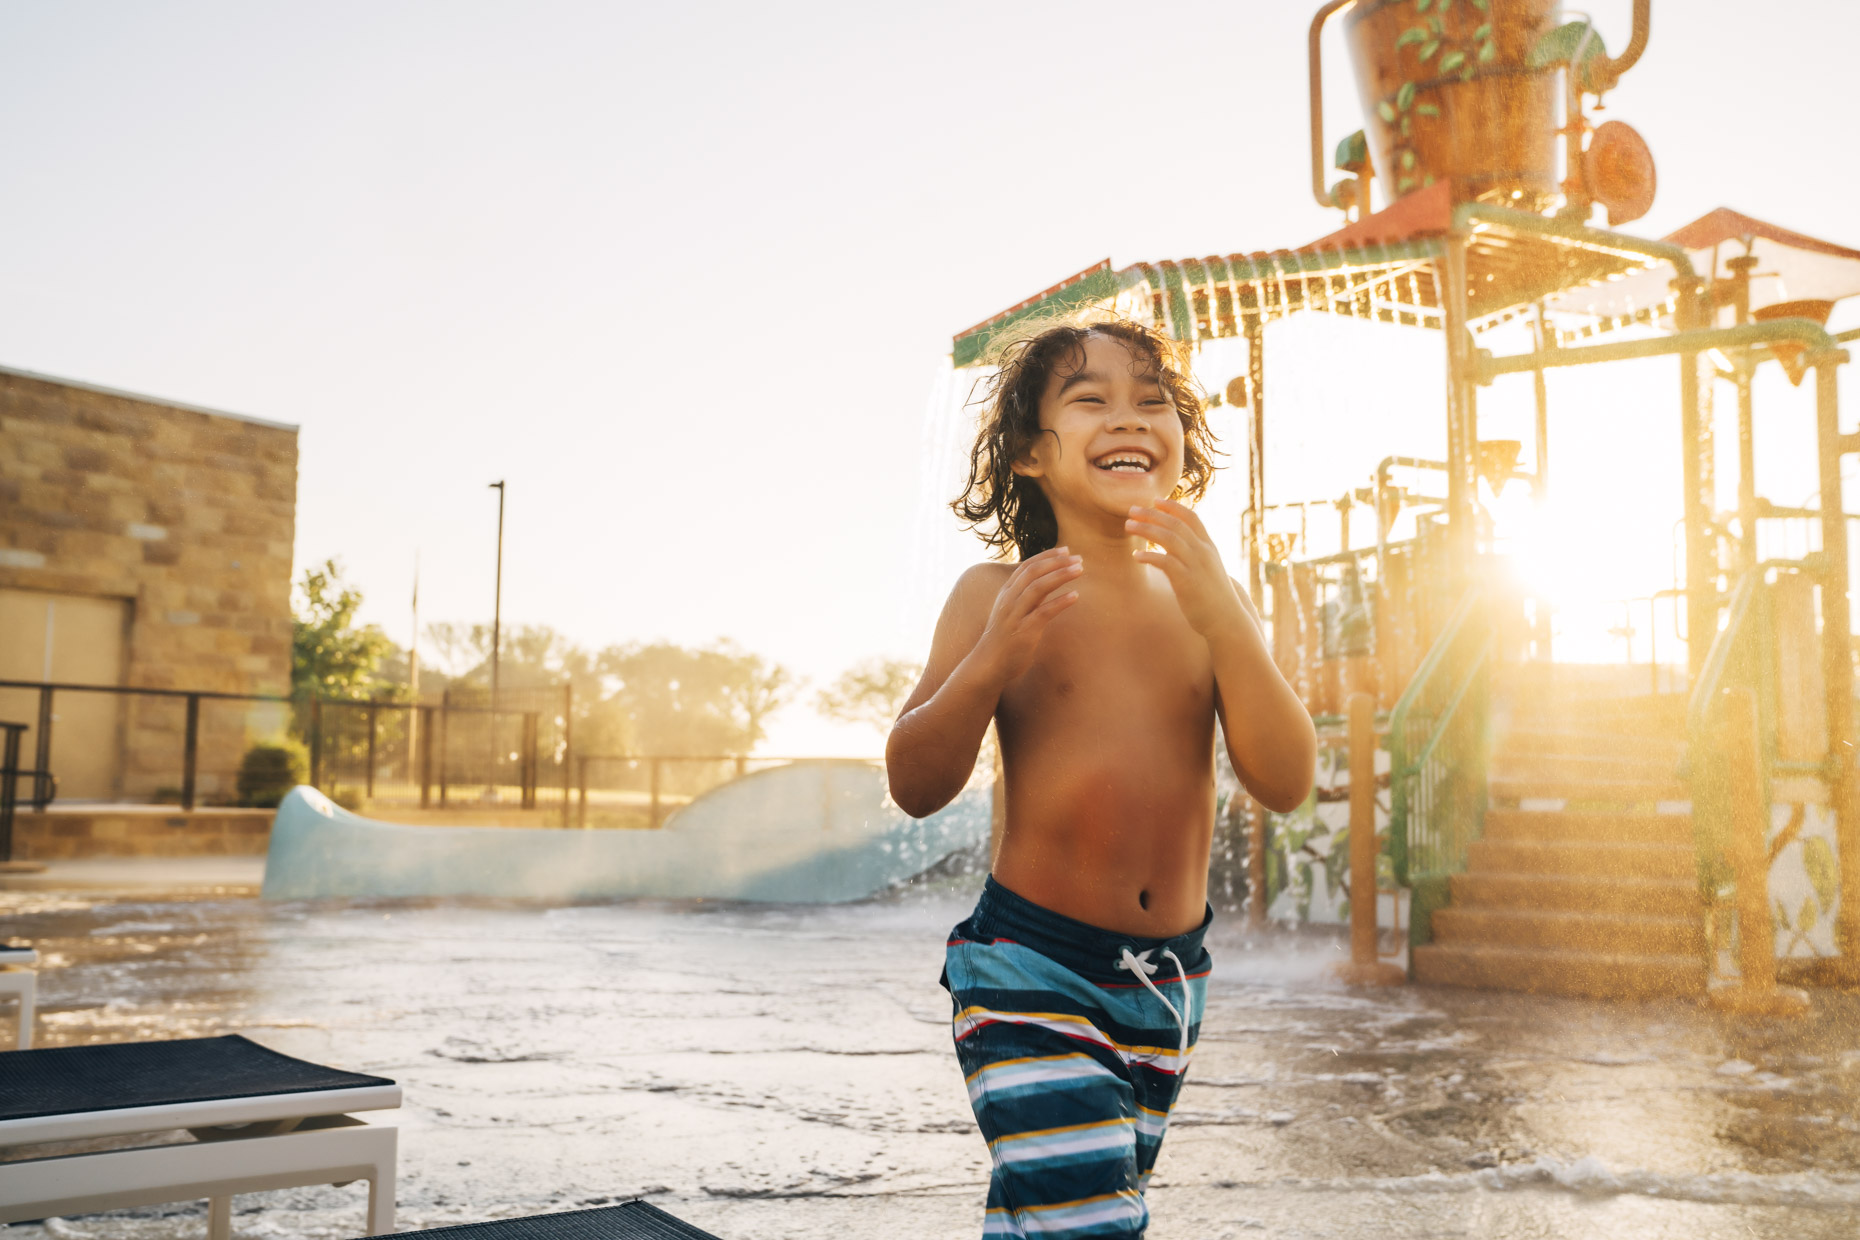 Hispanic boy playing in water park laughing